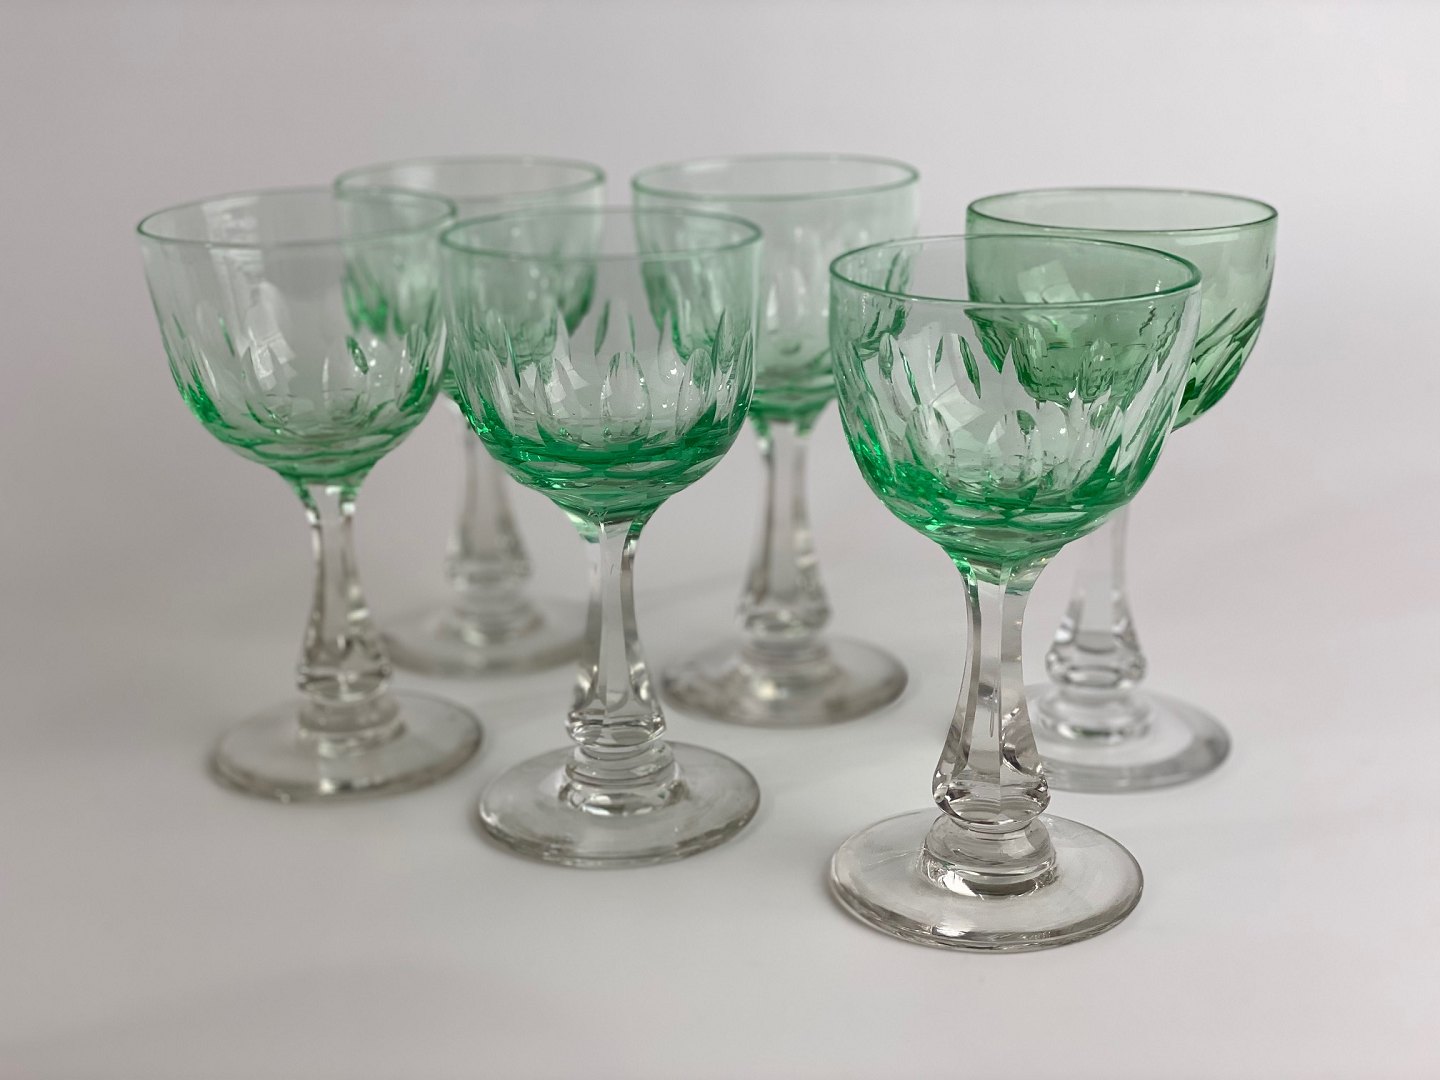 Quirky Sundays Antik & Vintage - Grønne Derby hvidvinsglas, facetteret stilk, grøn Holmegaard, Fyens